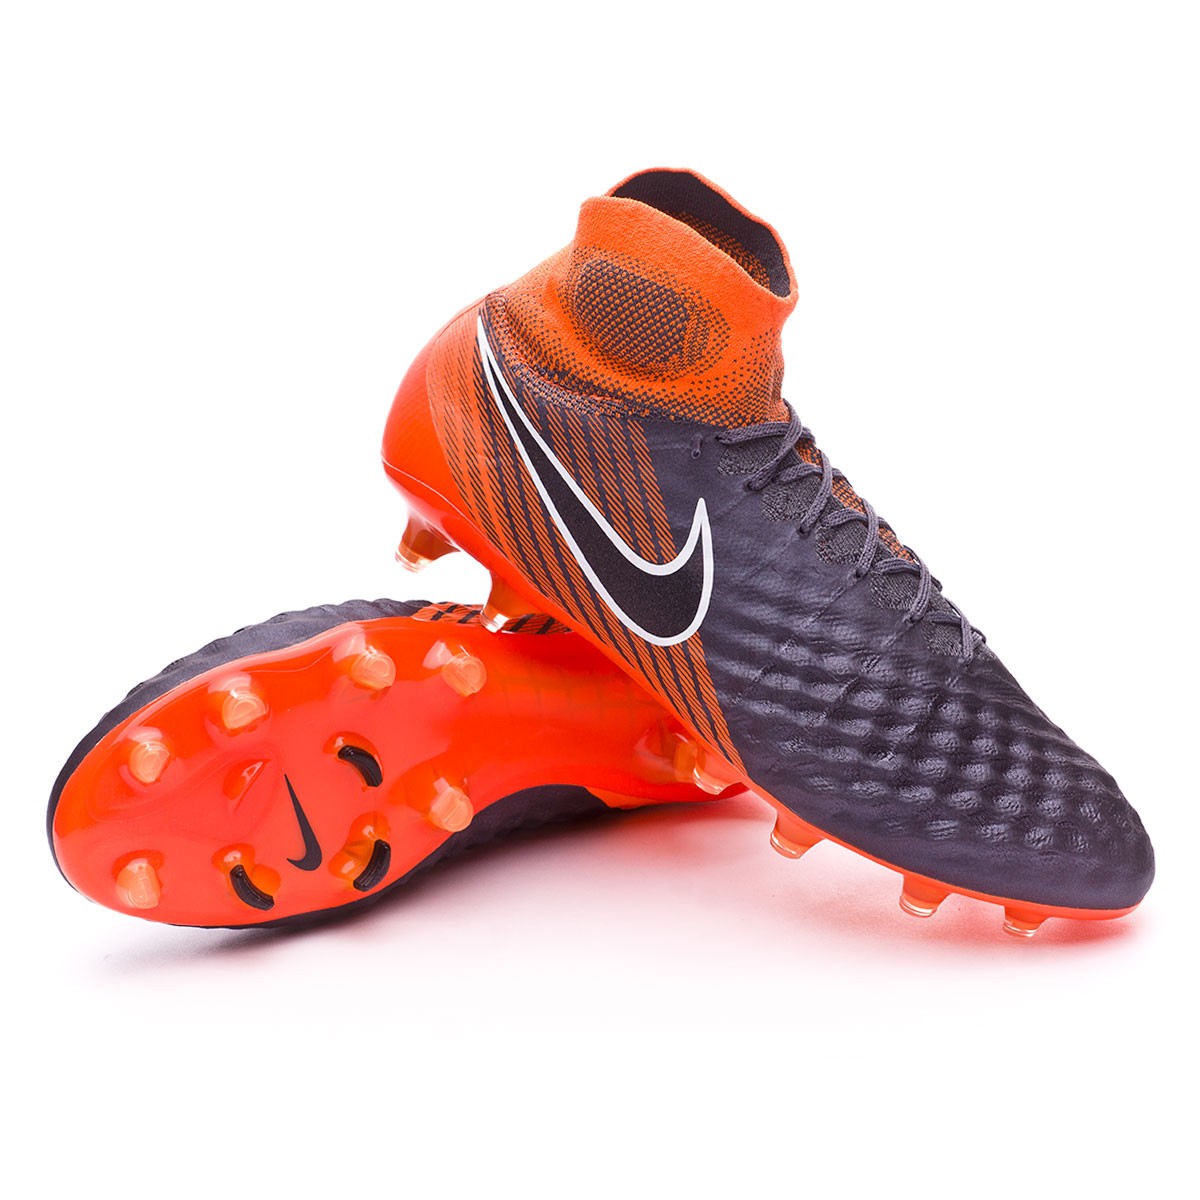 Bota de fútbol Nike Magista Obra II Elite DF FG Dark grey-Black-Total  orange-White - Tienda de fútbol Fútbol Emotion